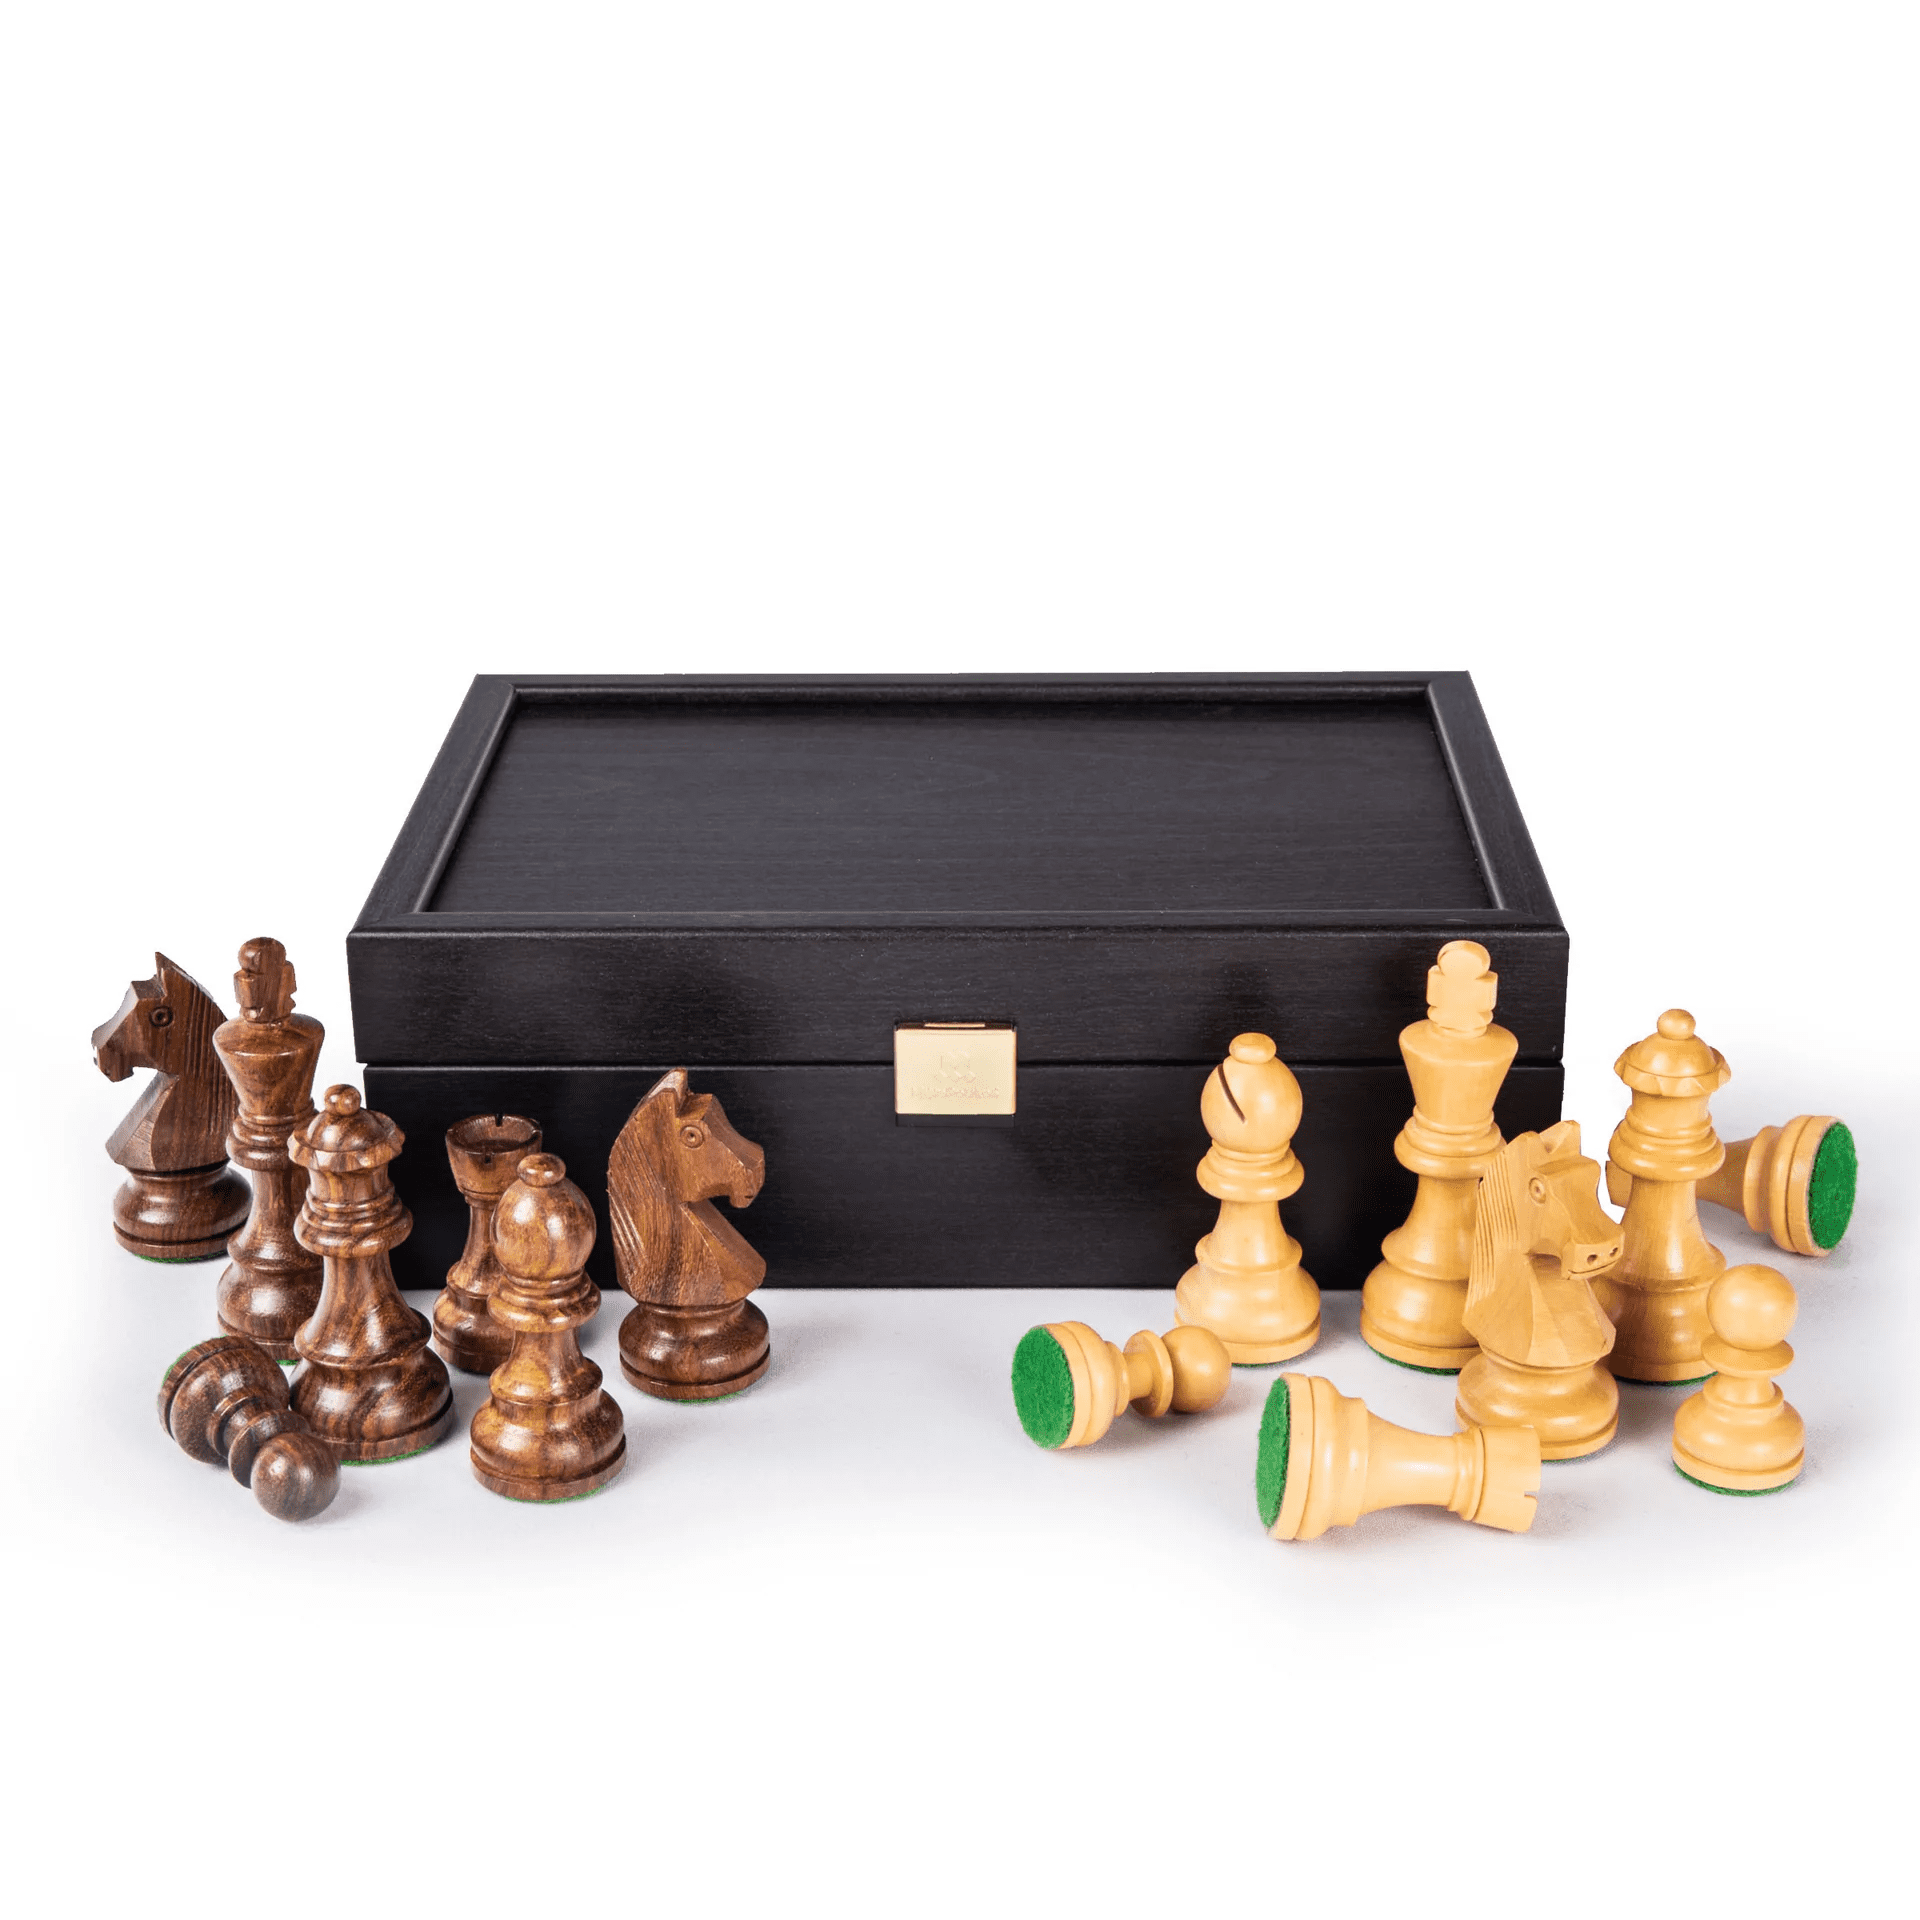 Staunton houten schaakstukken - Koningshoogte 6.5cm